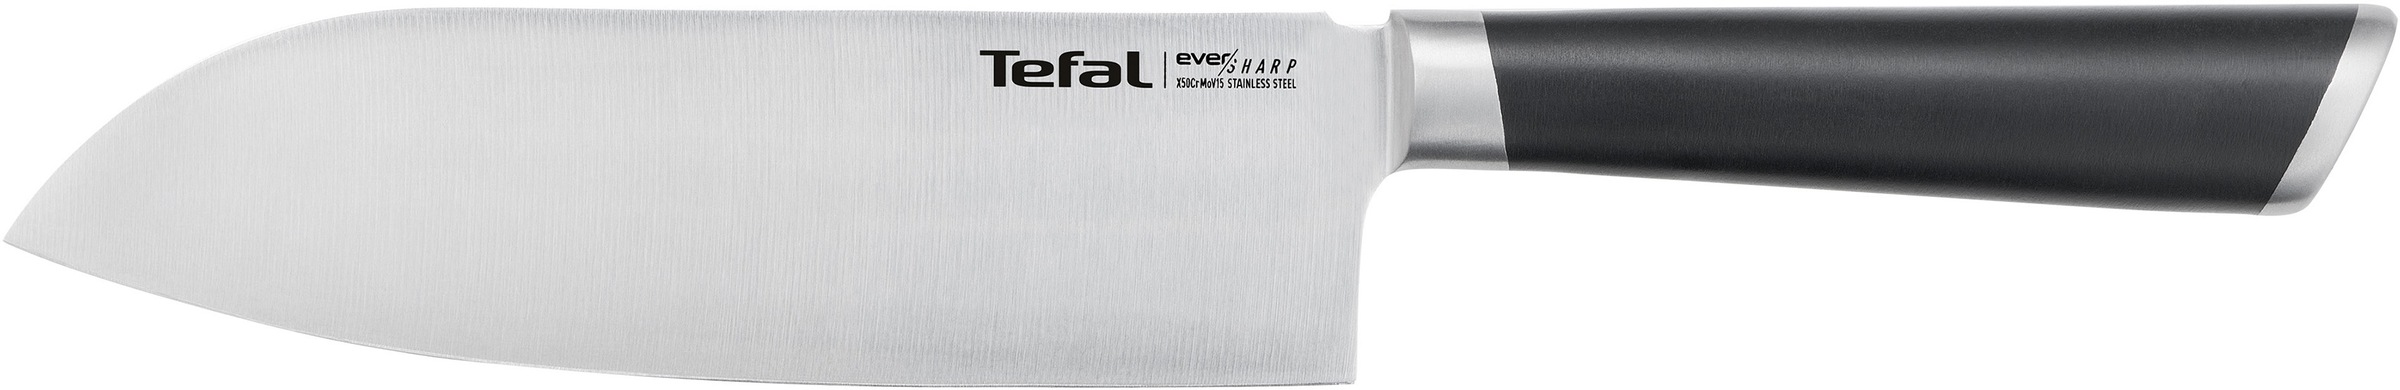 Tefal Messer-Set »K25790 Ever Sharp S«, (Set, 2 tlg.), Edelstahl, lang anhaltende Schneidleistung und Schärfe